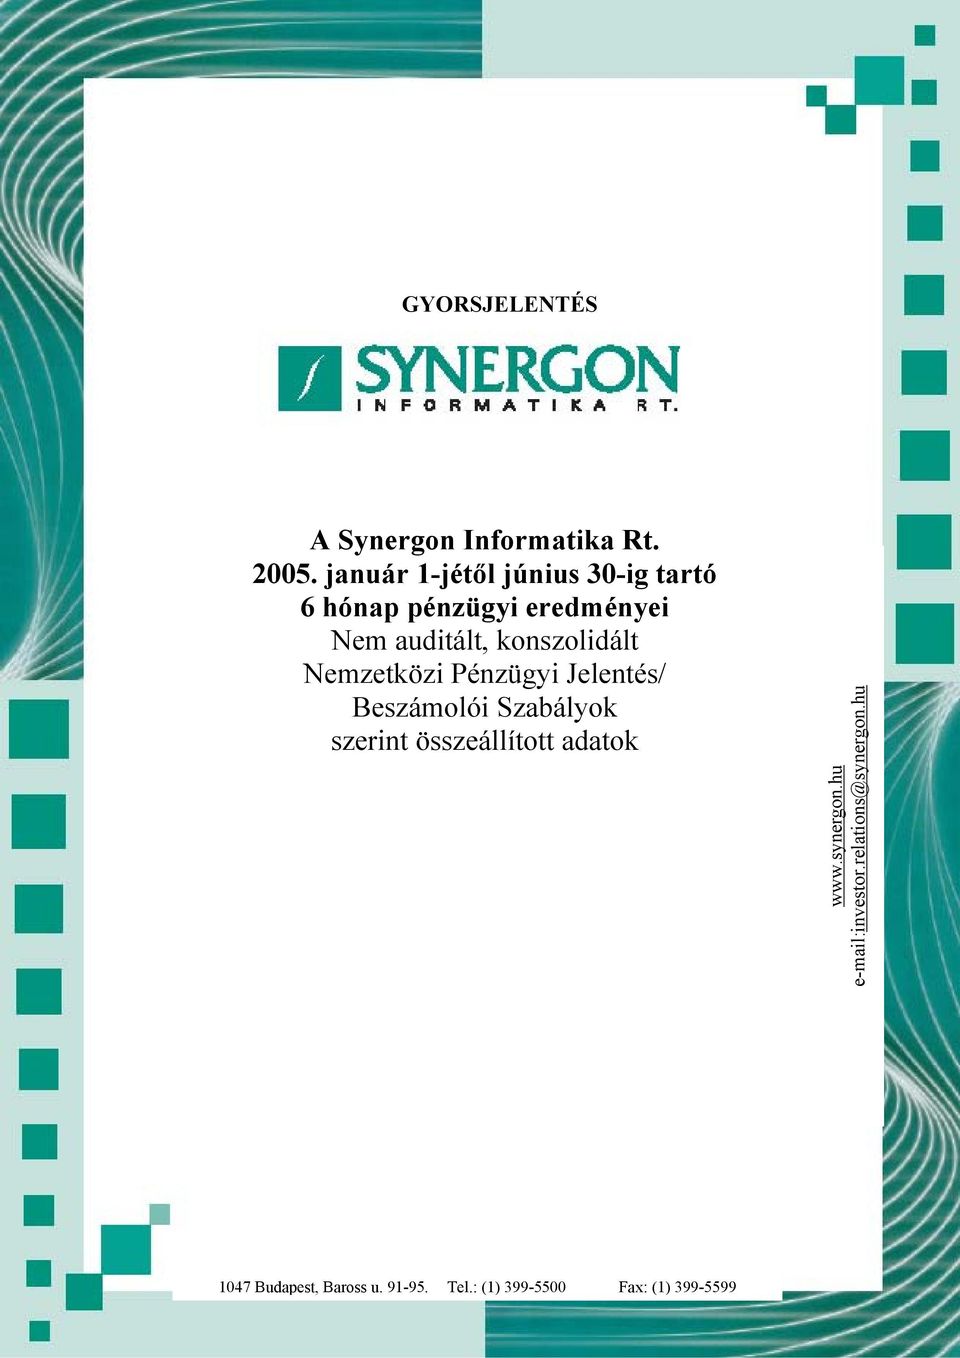 Nemzetközi Pénzügyi Jelentés/ Beszámolói Szabályok szerint összeállított adatok www.synergon.